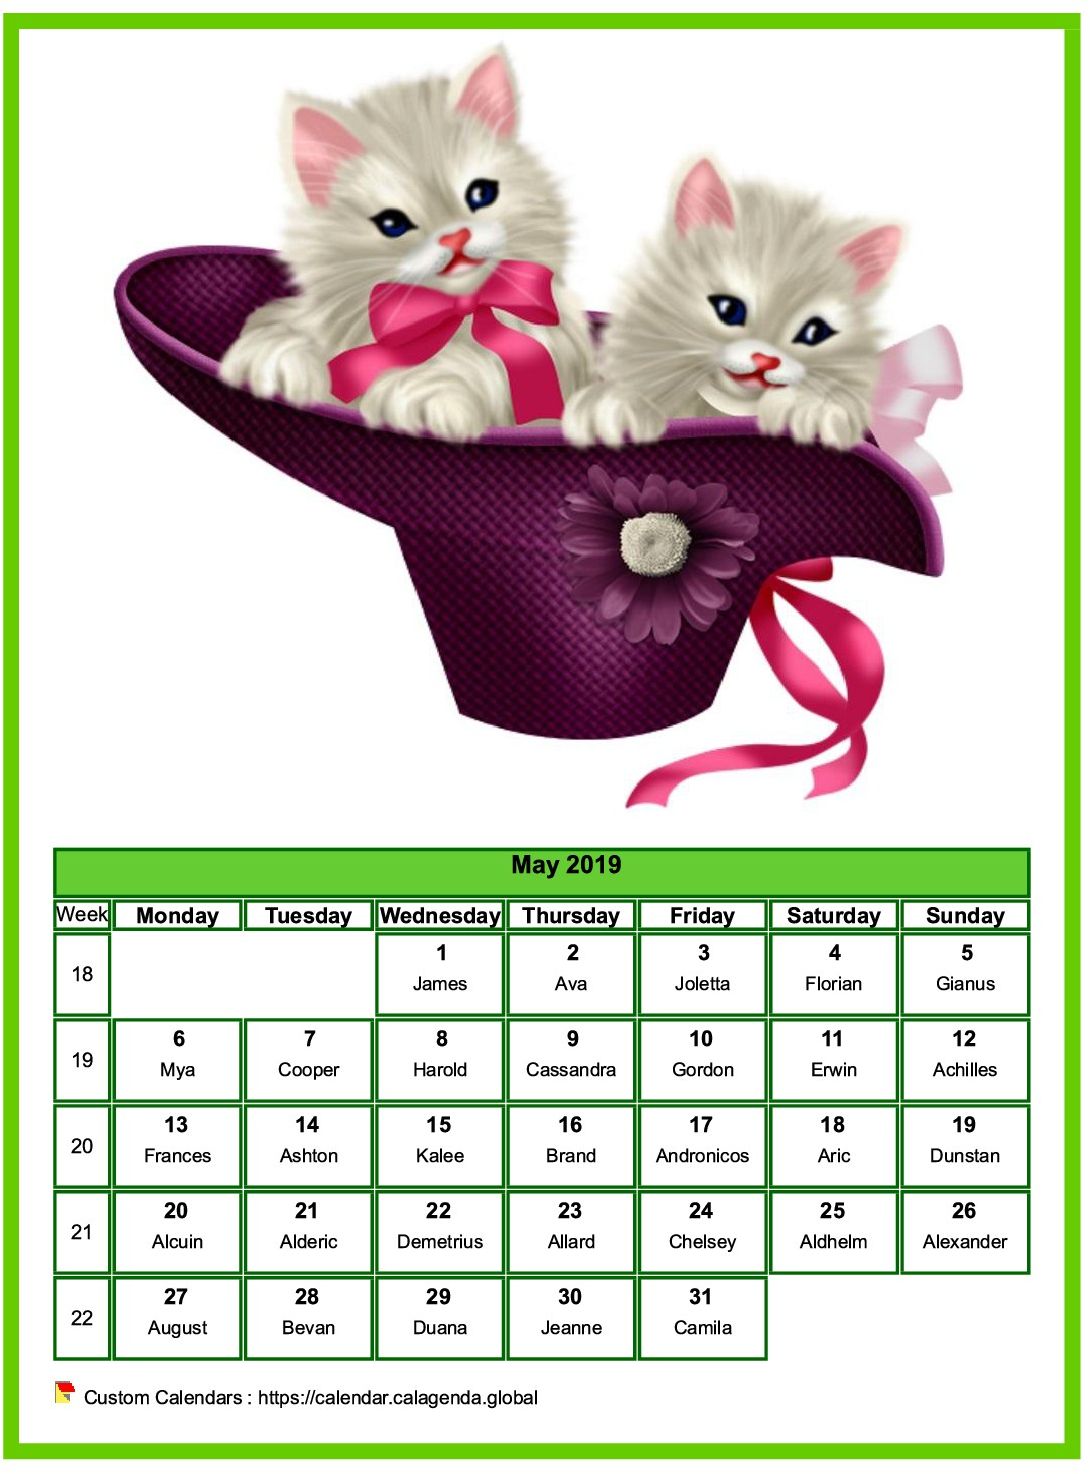 Calendar may 2019 cats